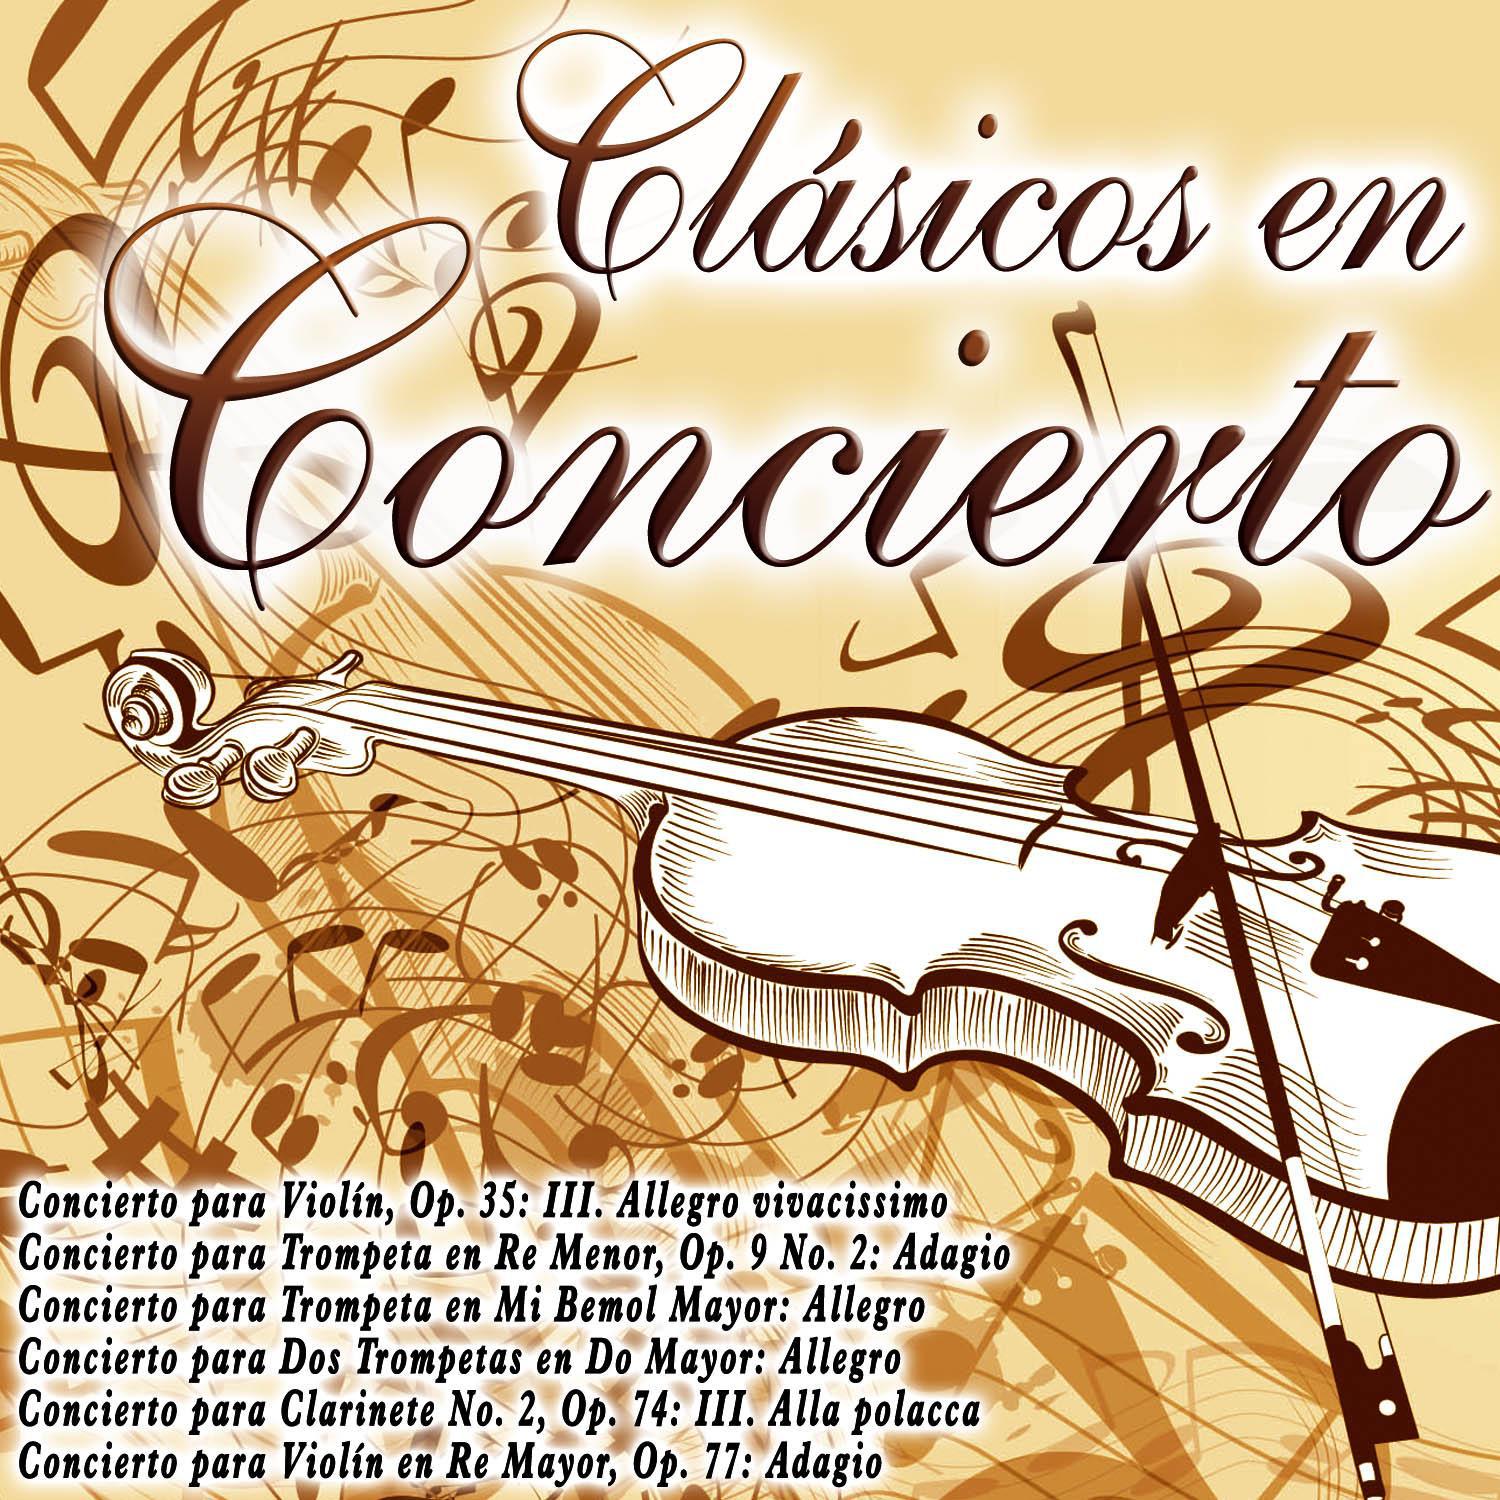 Concierto para Clarinete No. 2, Op. 74: III. Alla polacca